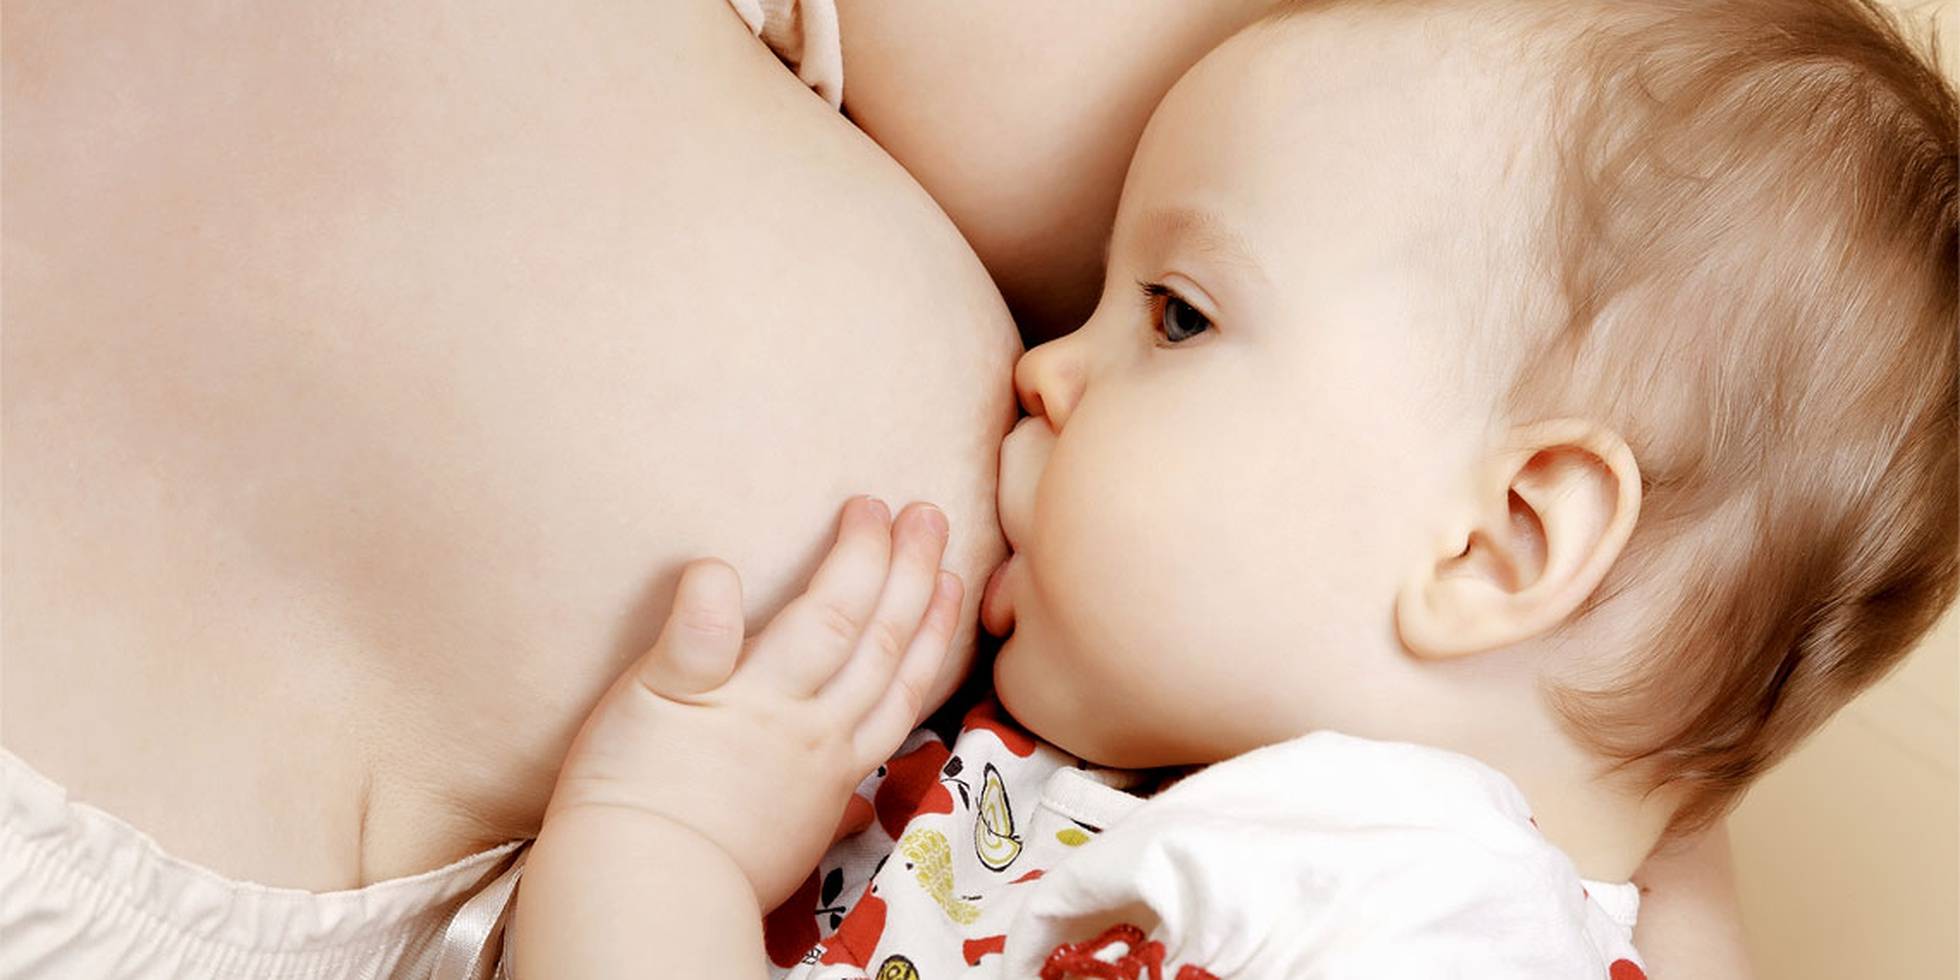 Ребёнок постоянно требует материнскую грудь. Причины и способы решения проблемы